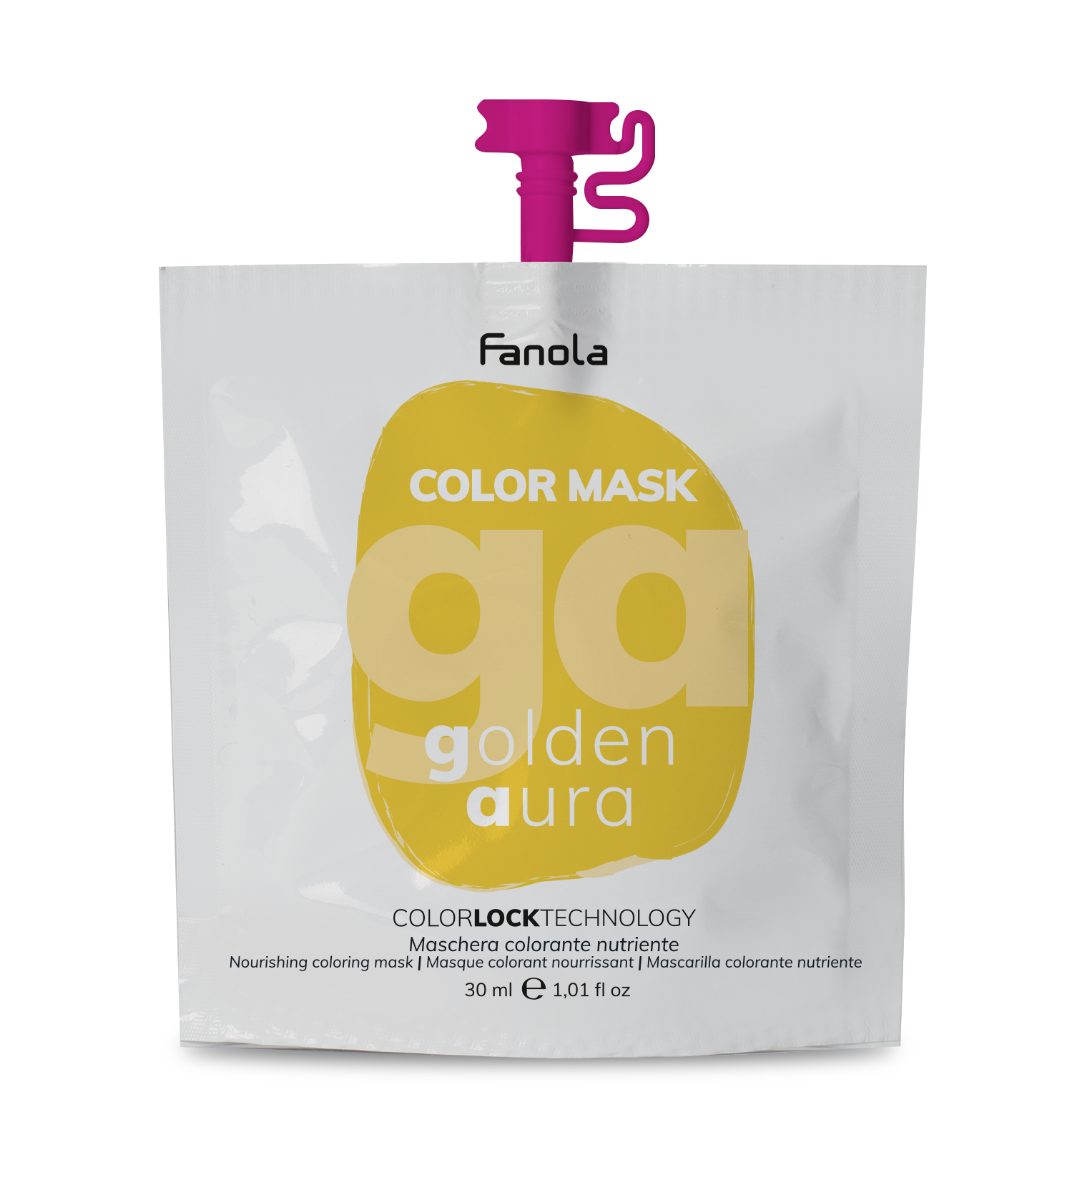 Fanola Haarfarbe Fanola Fanola Color Masker Golden Aura 30ml Golden Aura